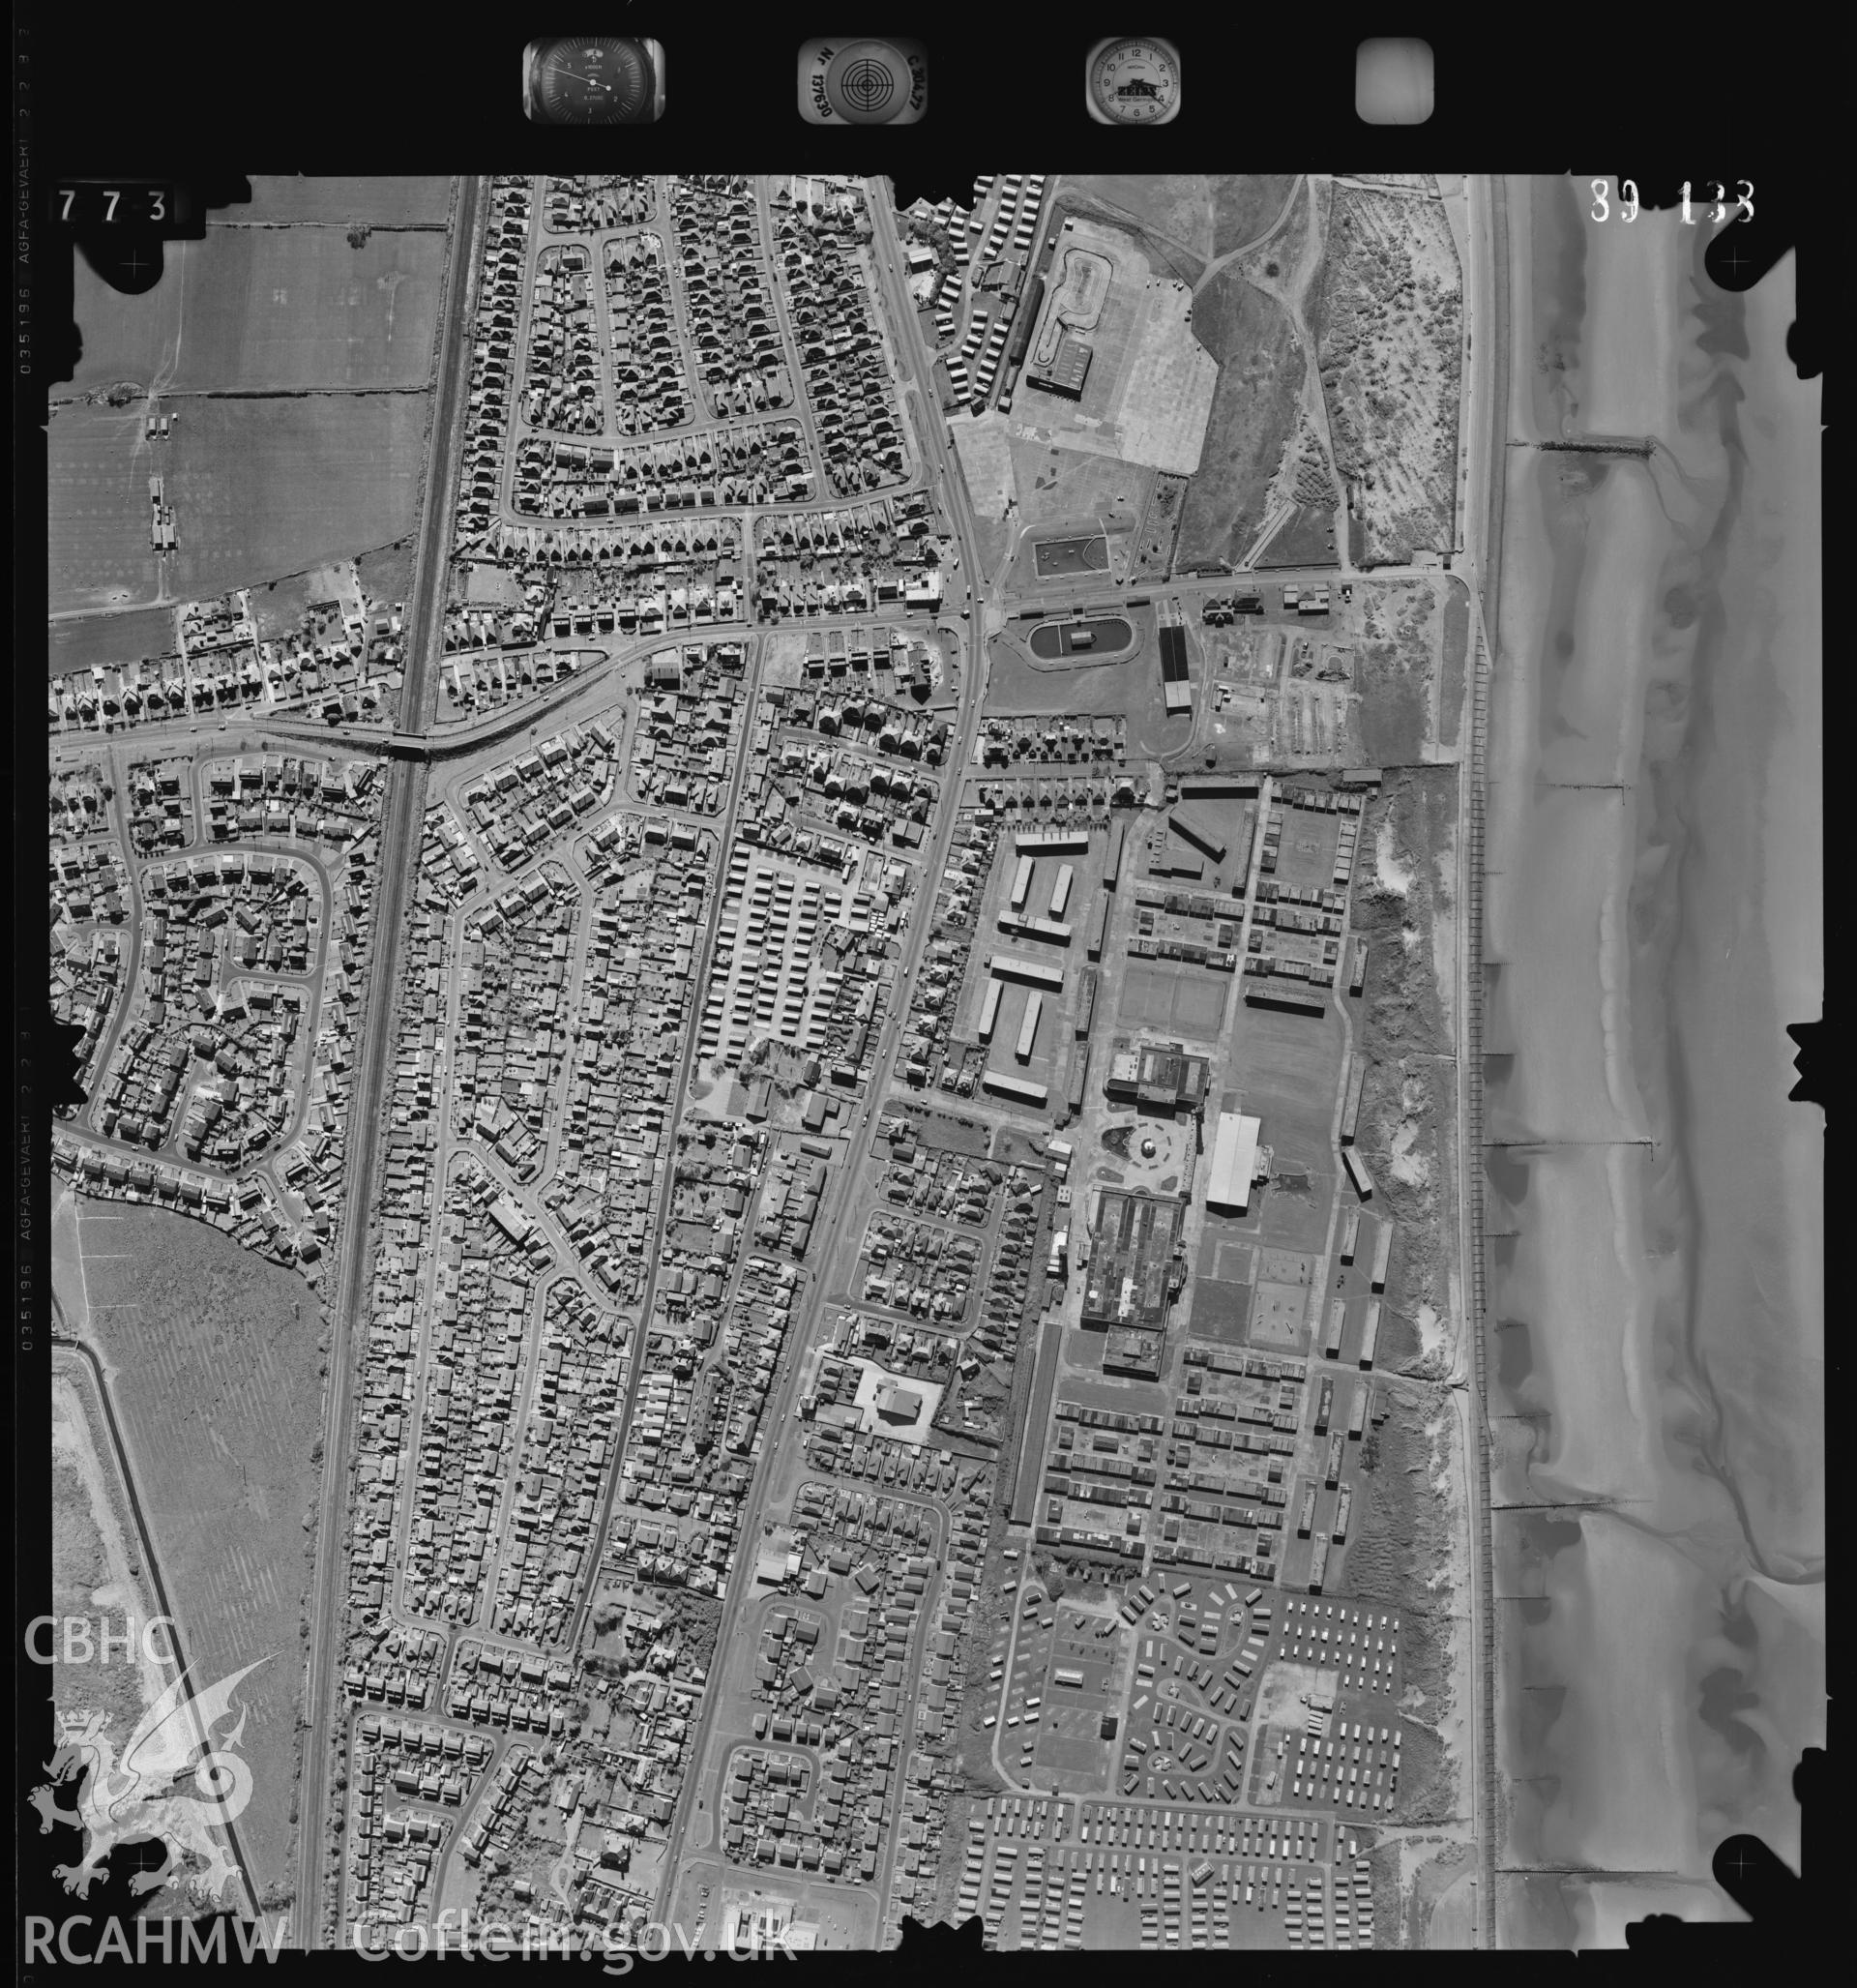 Digital copy of an aerial view of Prestatyn taken by Ordnance Survey. SJ045828.